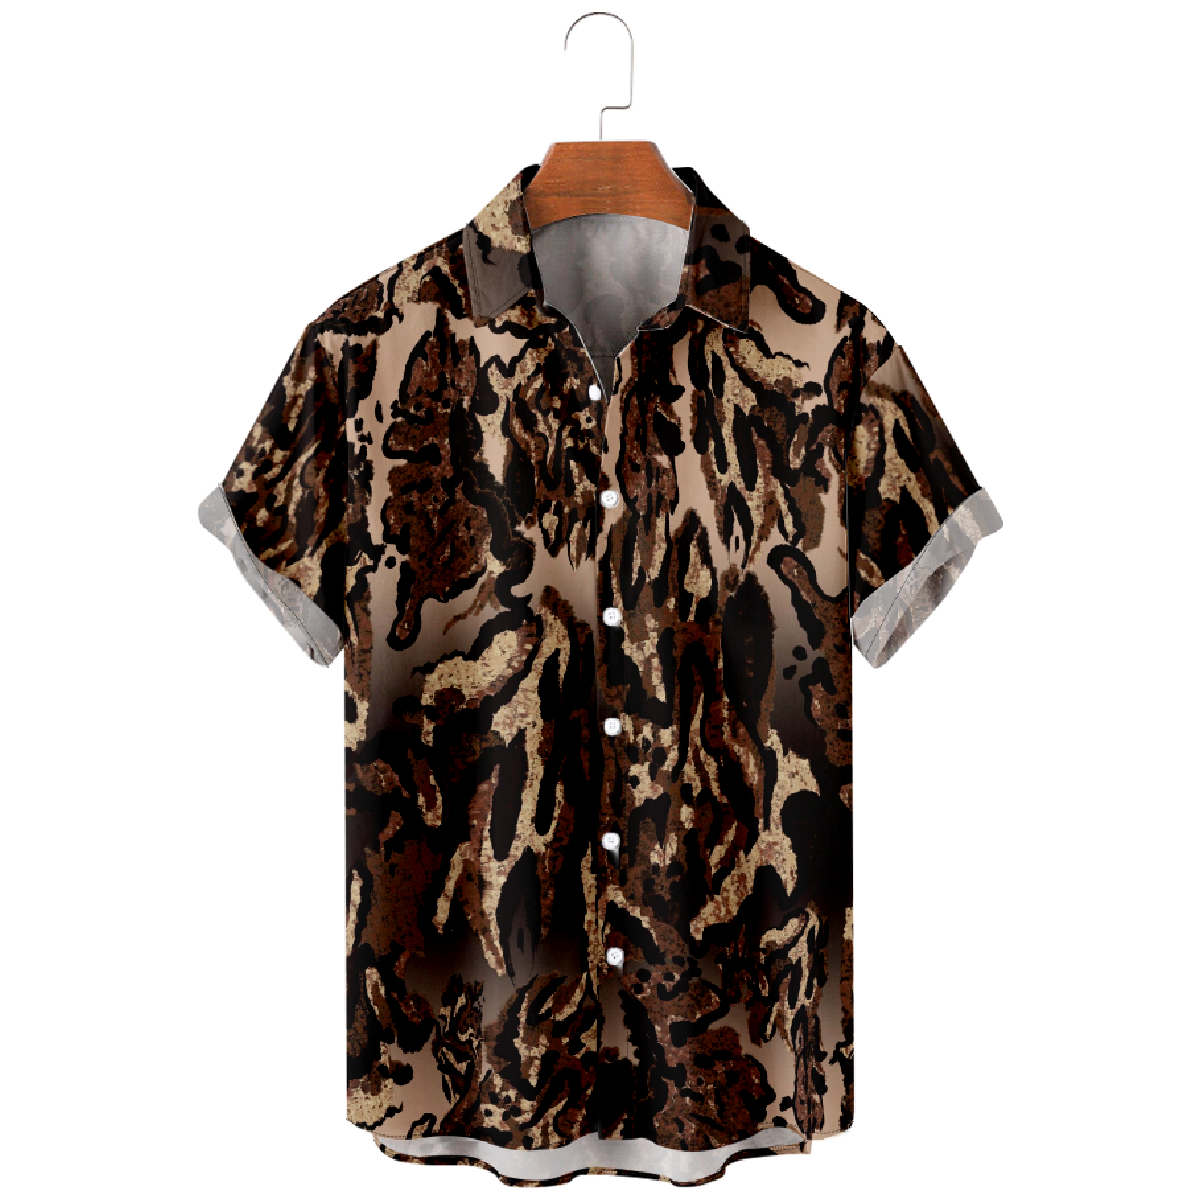 Brown Pattern Button Up Shirt for Men Short Sleeve Shirt Casual Shirt